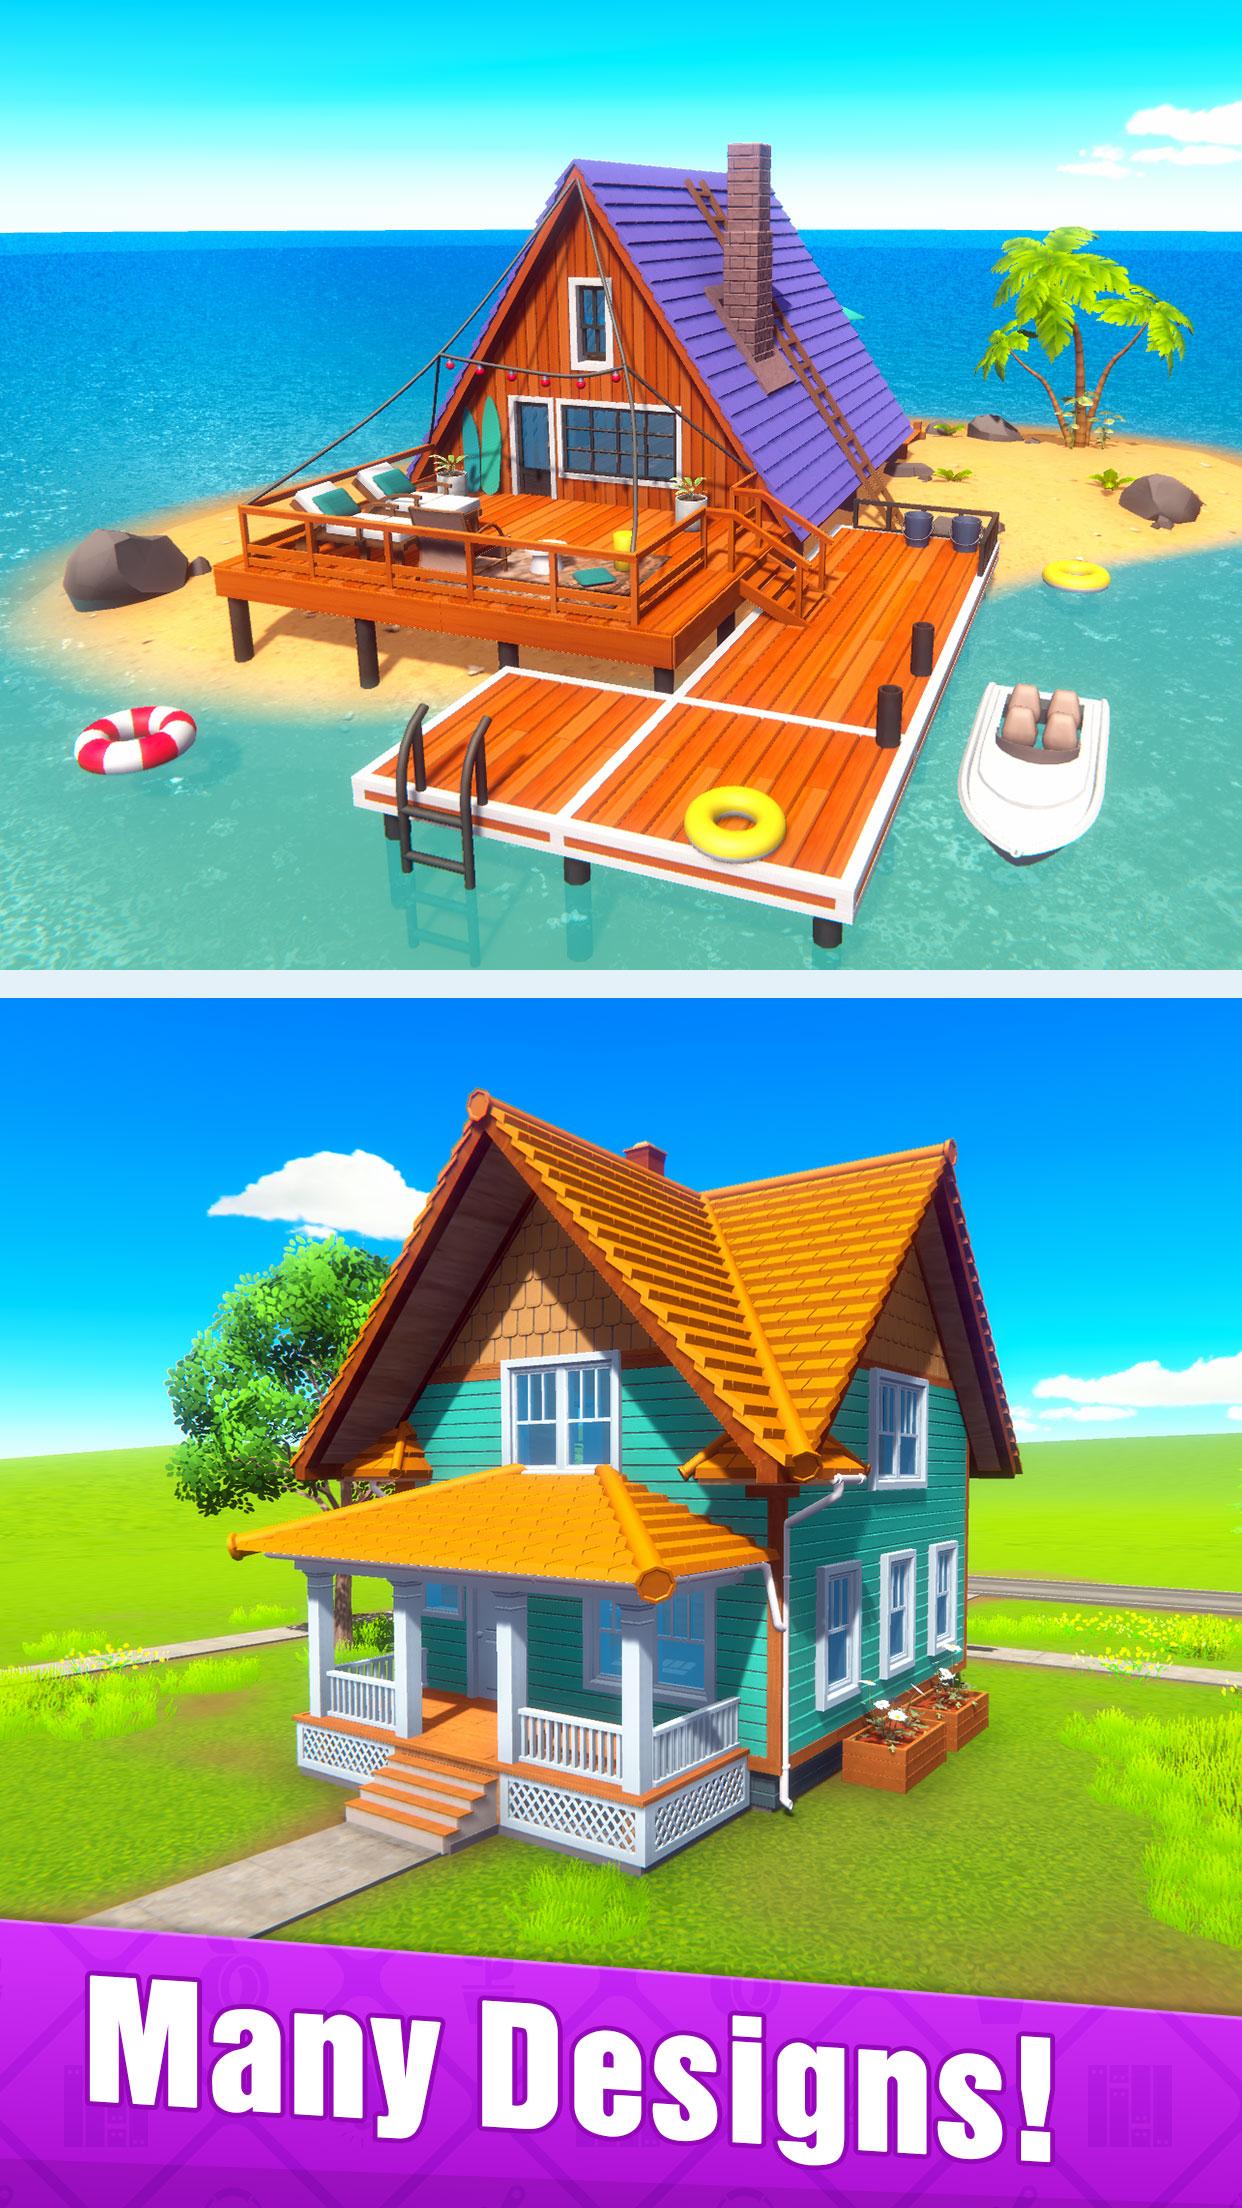 我的房子我的世界设计游戏下载 My Home My World Design Games我的房子我的世界设计安卓版下载 游戏369